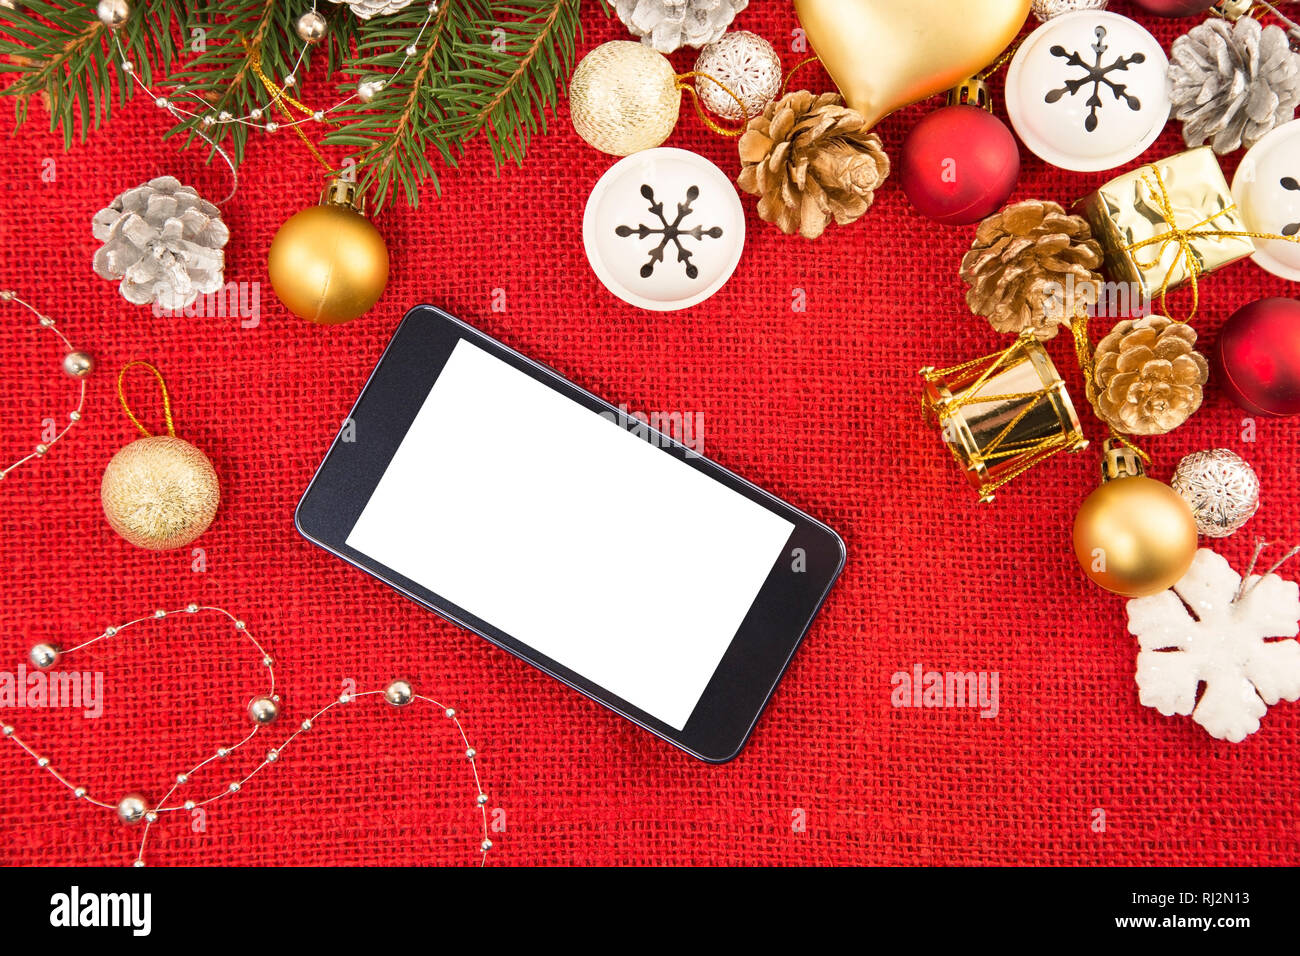 Handy Und Das Weihnachten Dekoration Auf Einem Roten Sackleinen Hintergrund Stockfotografie Alamy